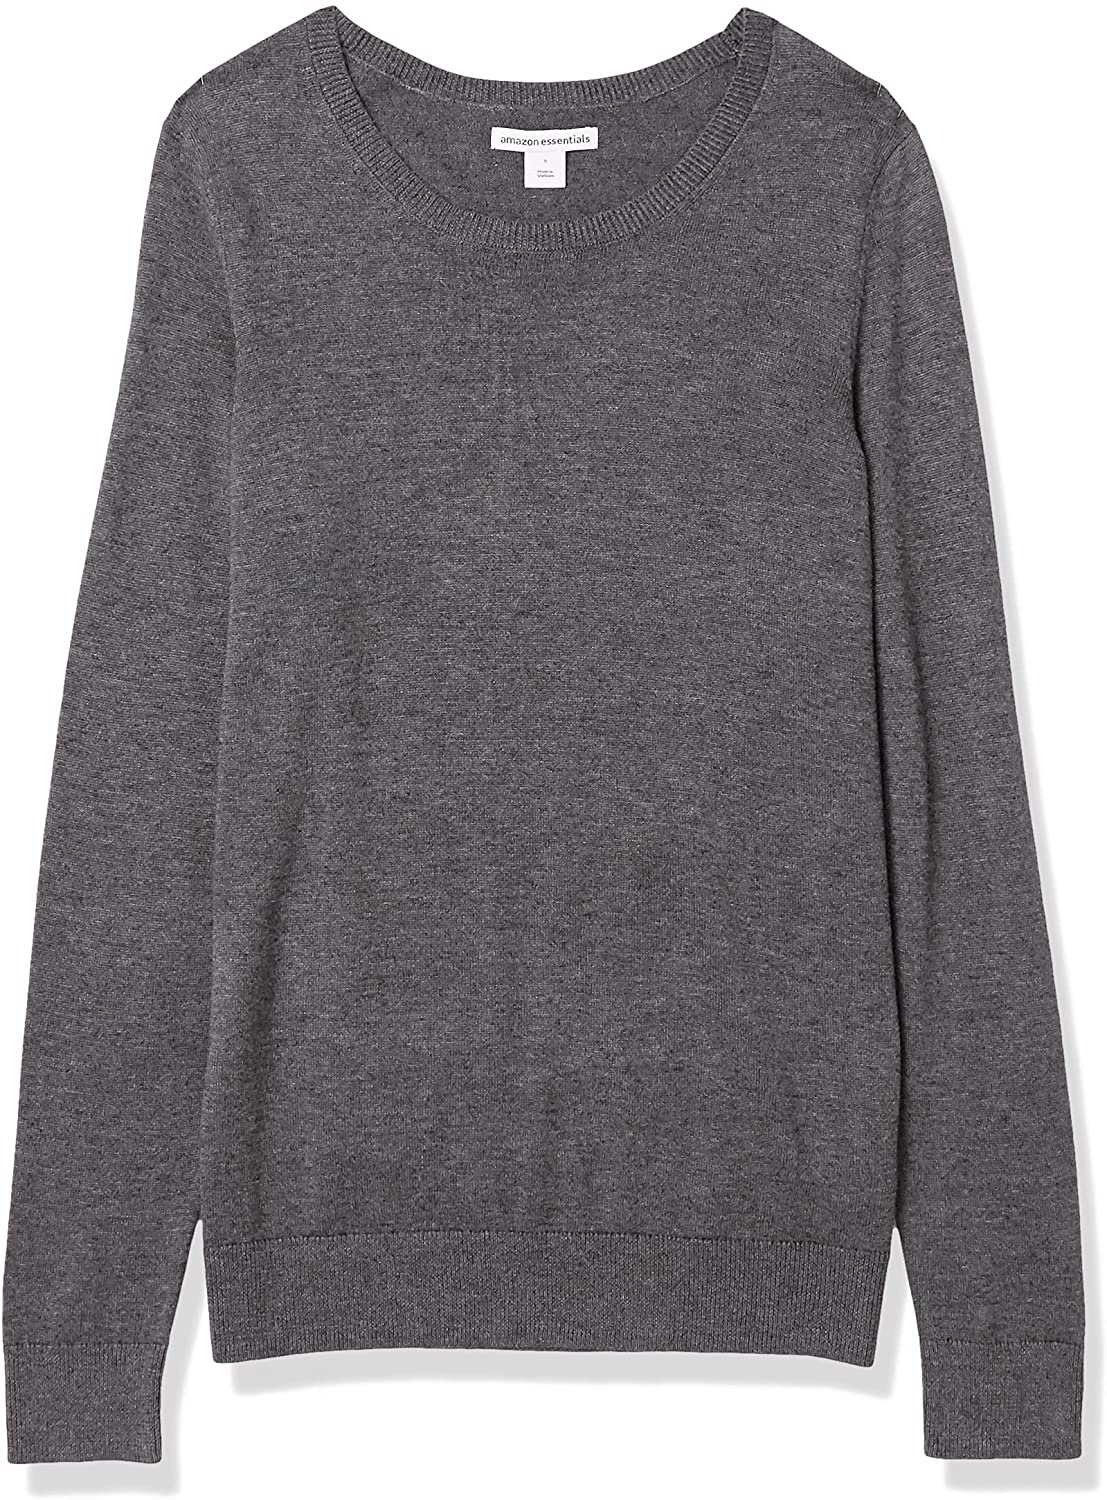 Amazon Essentials Women's Lightweight Crewneck Sweater